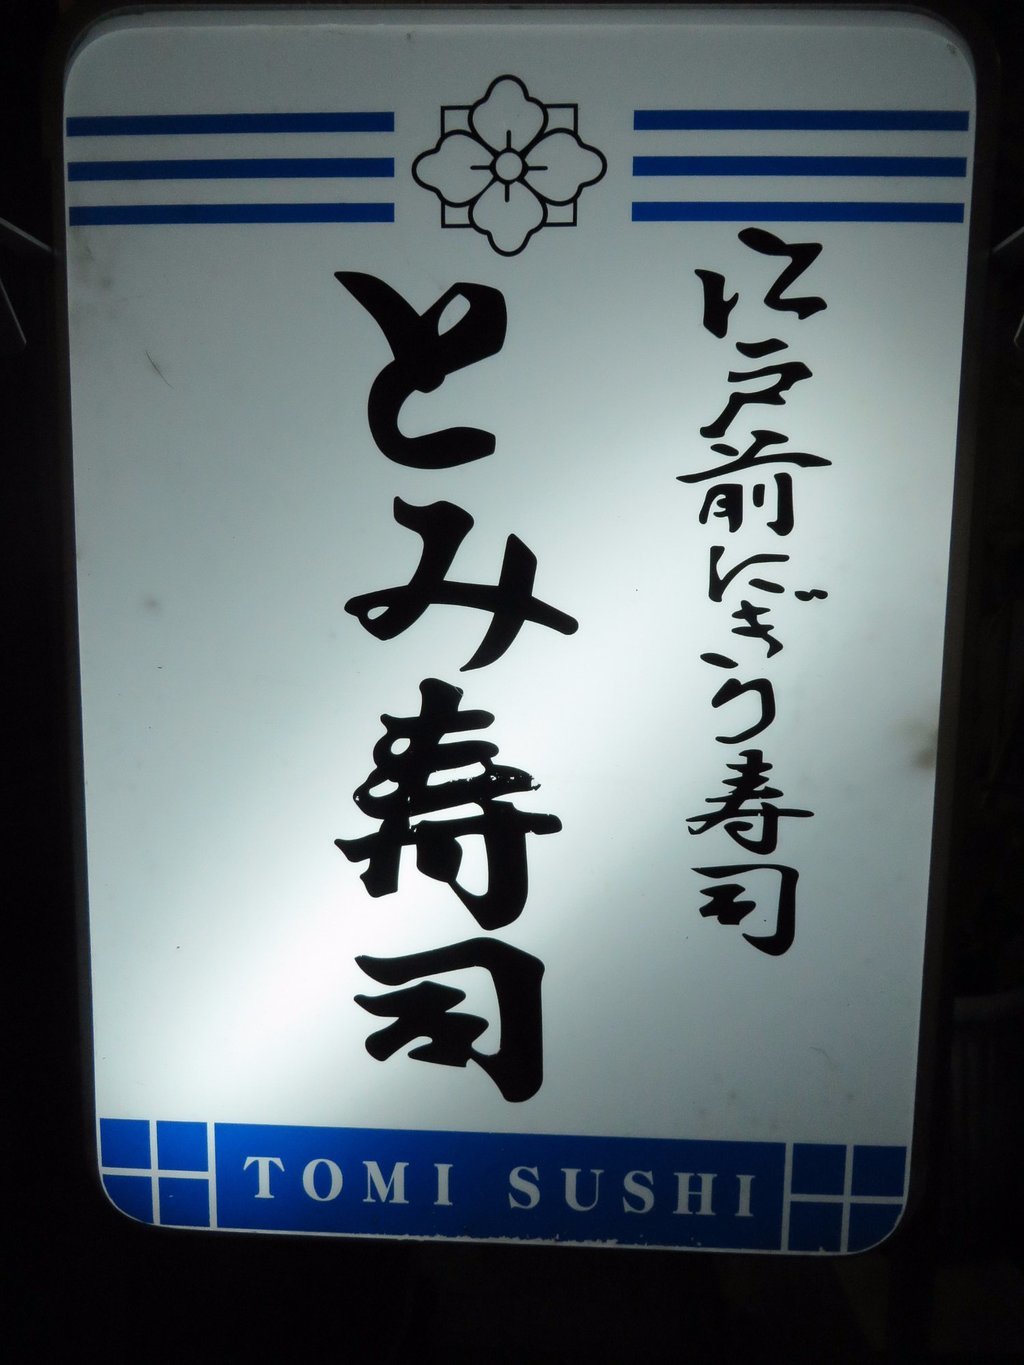 Tomizushi